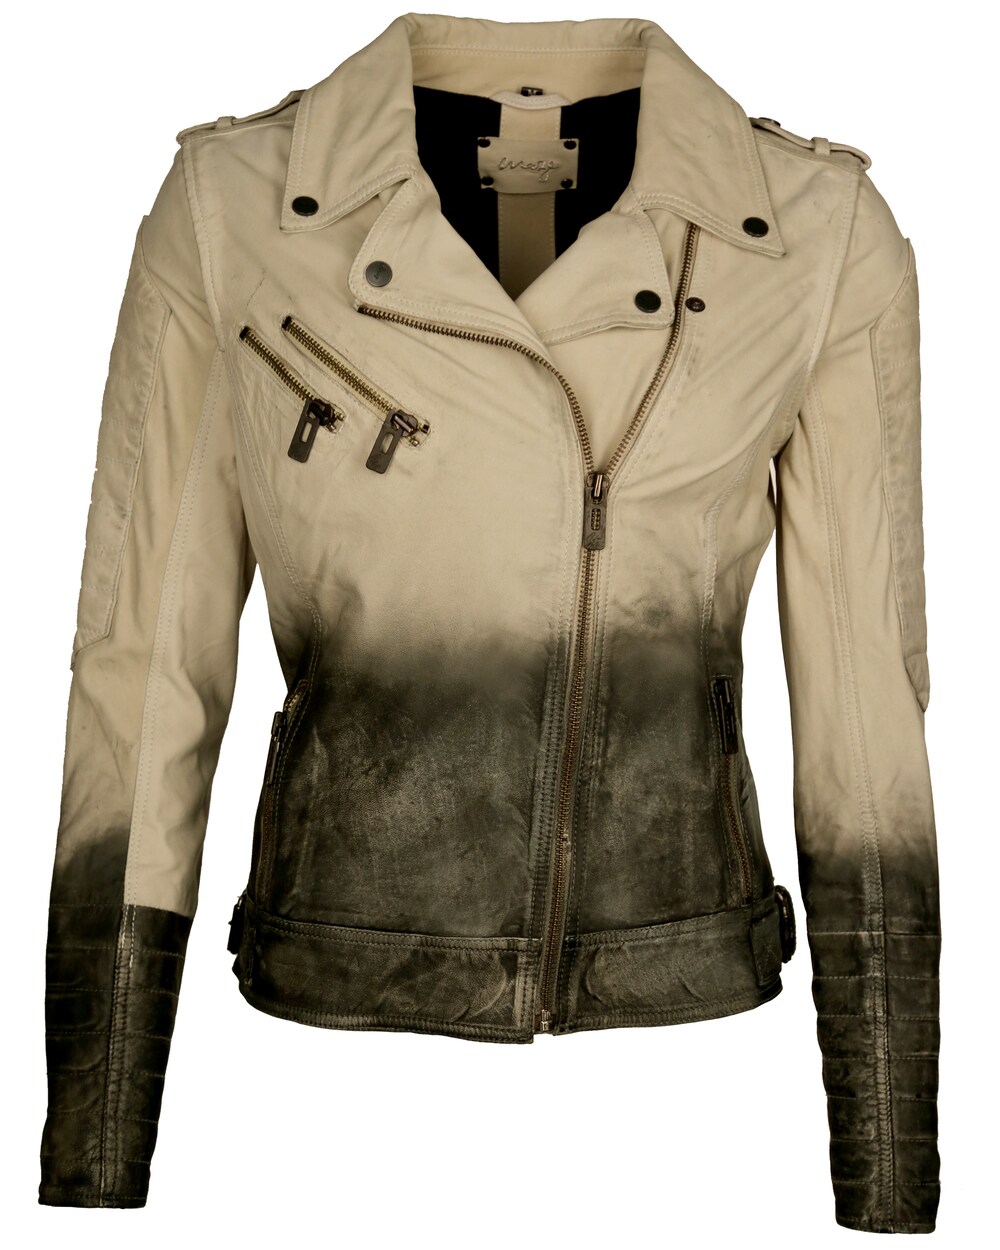 Межсезонная куртка Maze Kofu, светло-коричневый/темно-коричневый